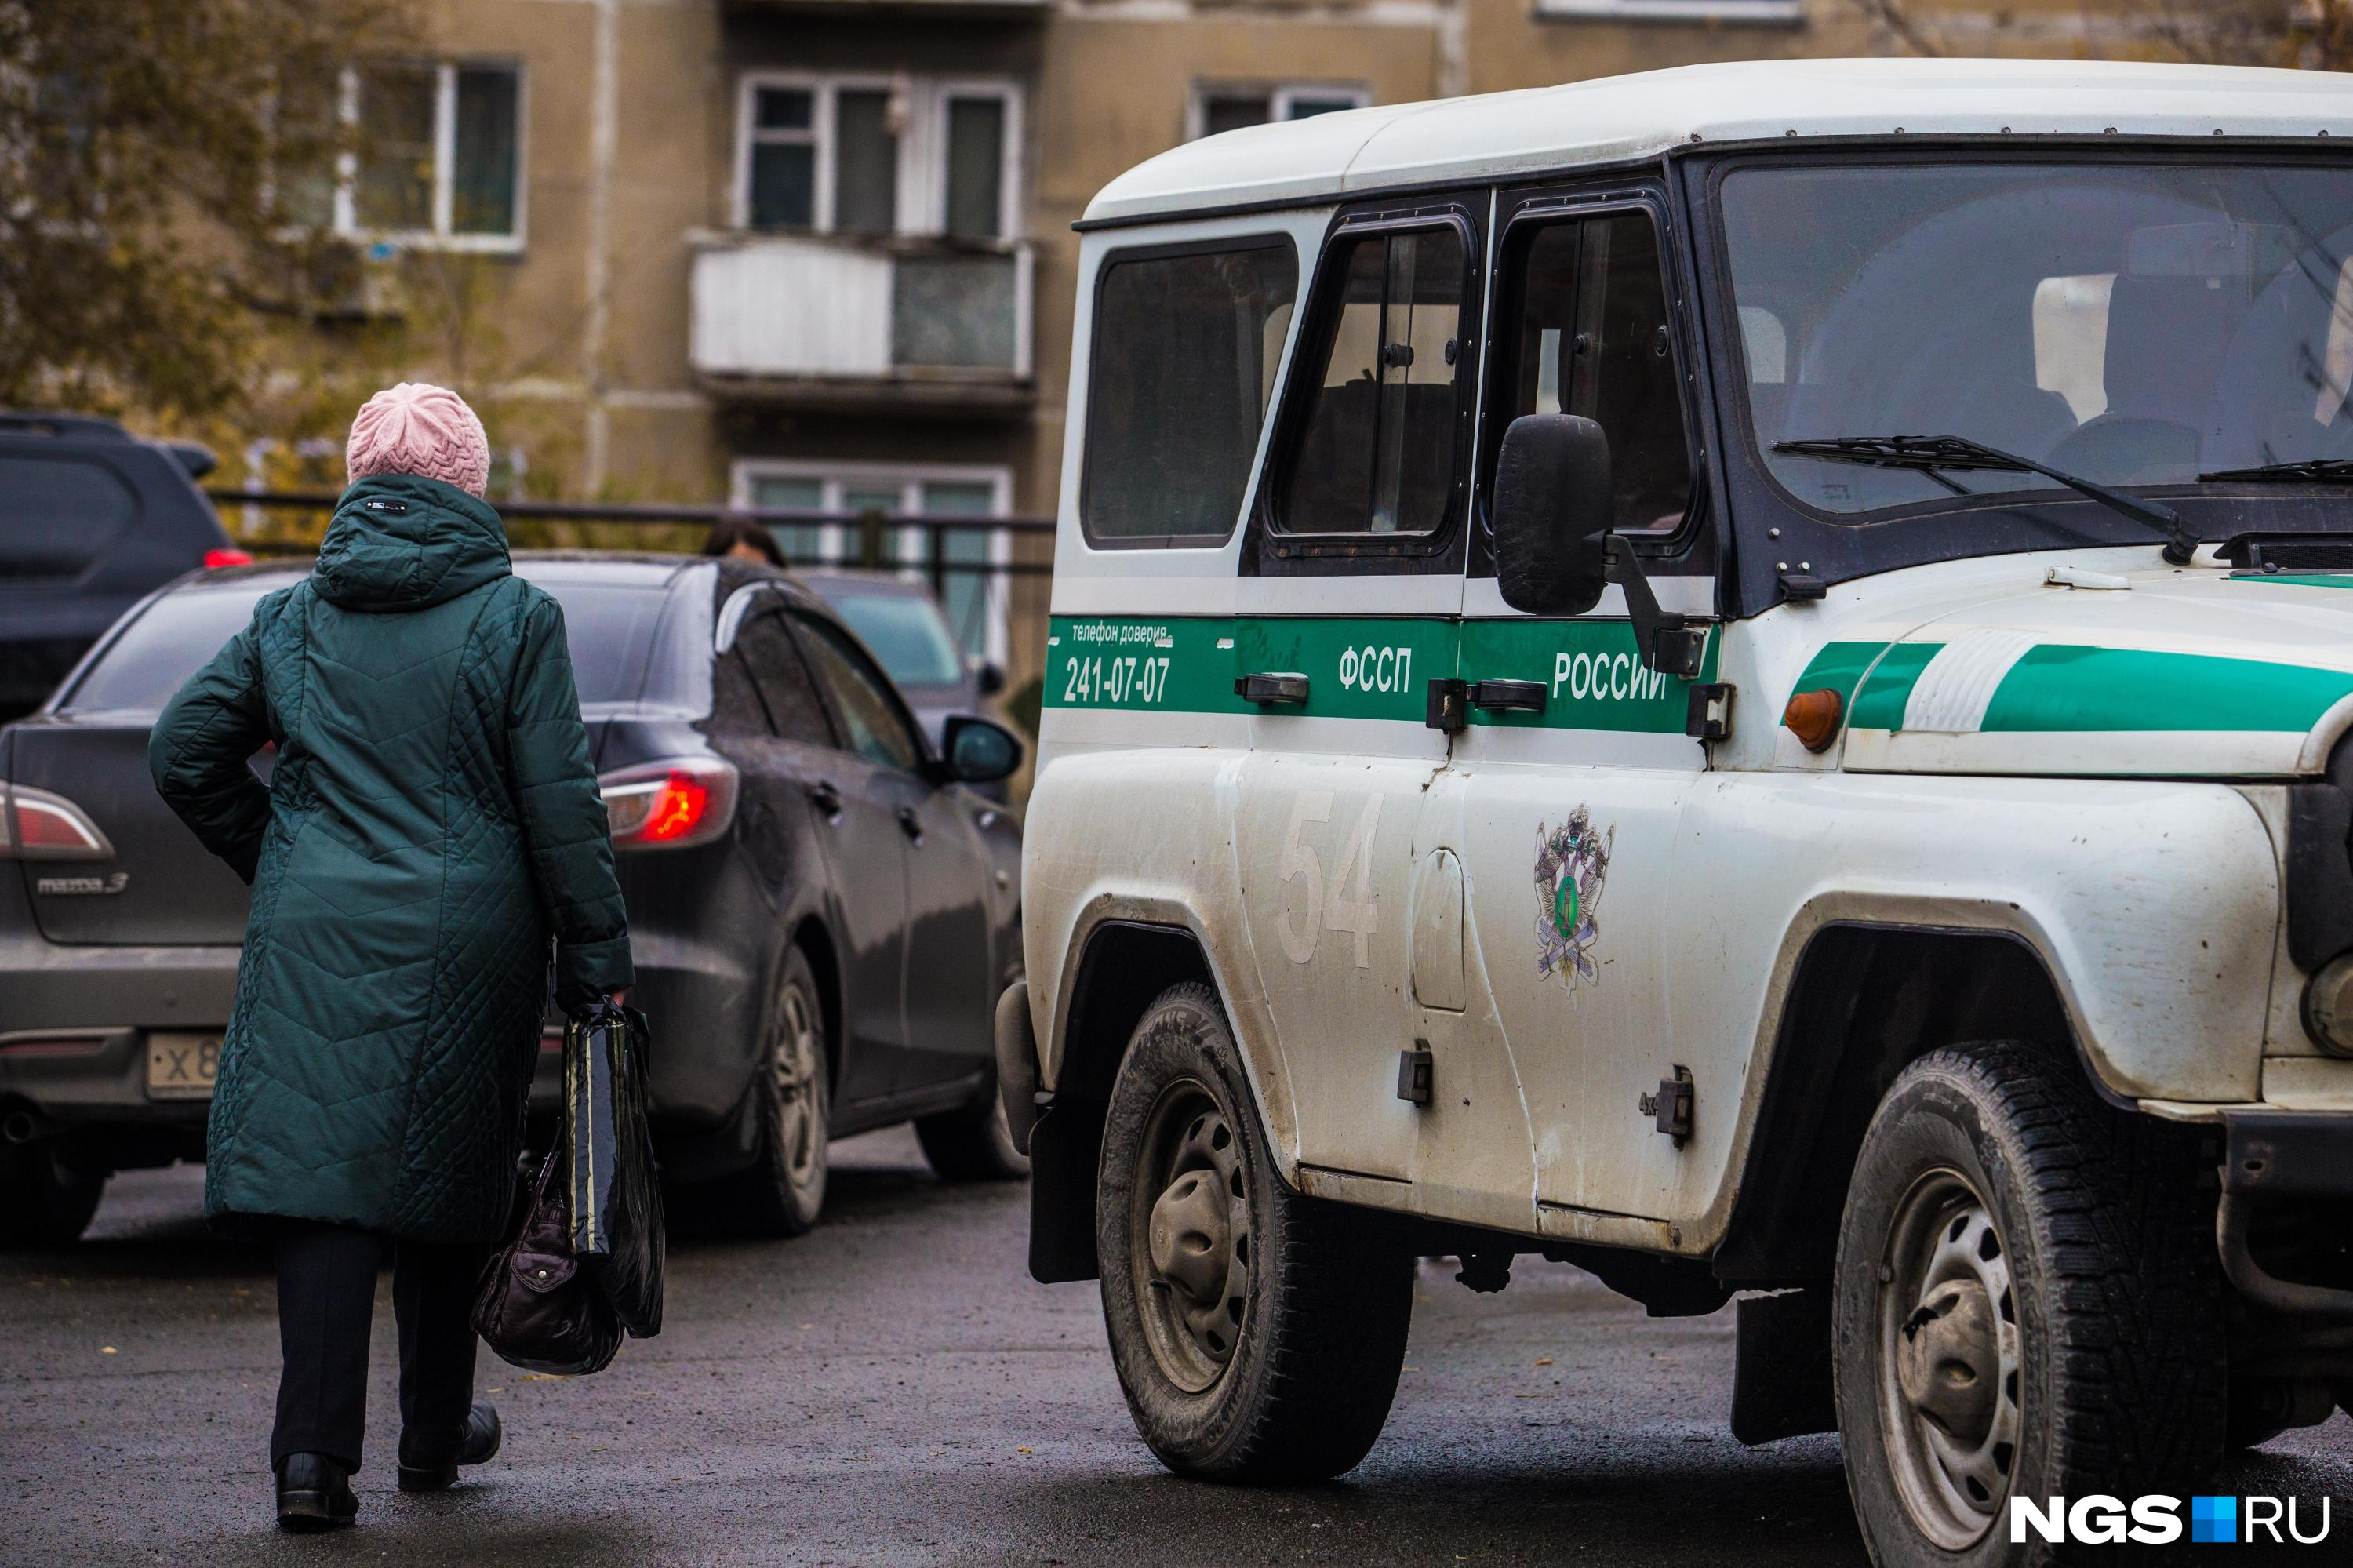 Только в Новосибирской области в прошлом году было возбуждено 1062 уголовных дела по факту неуплаты алиментов